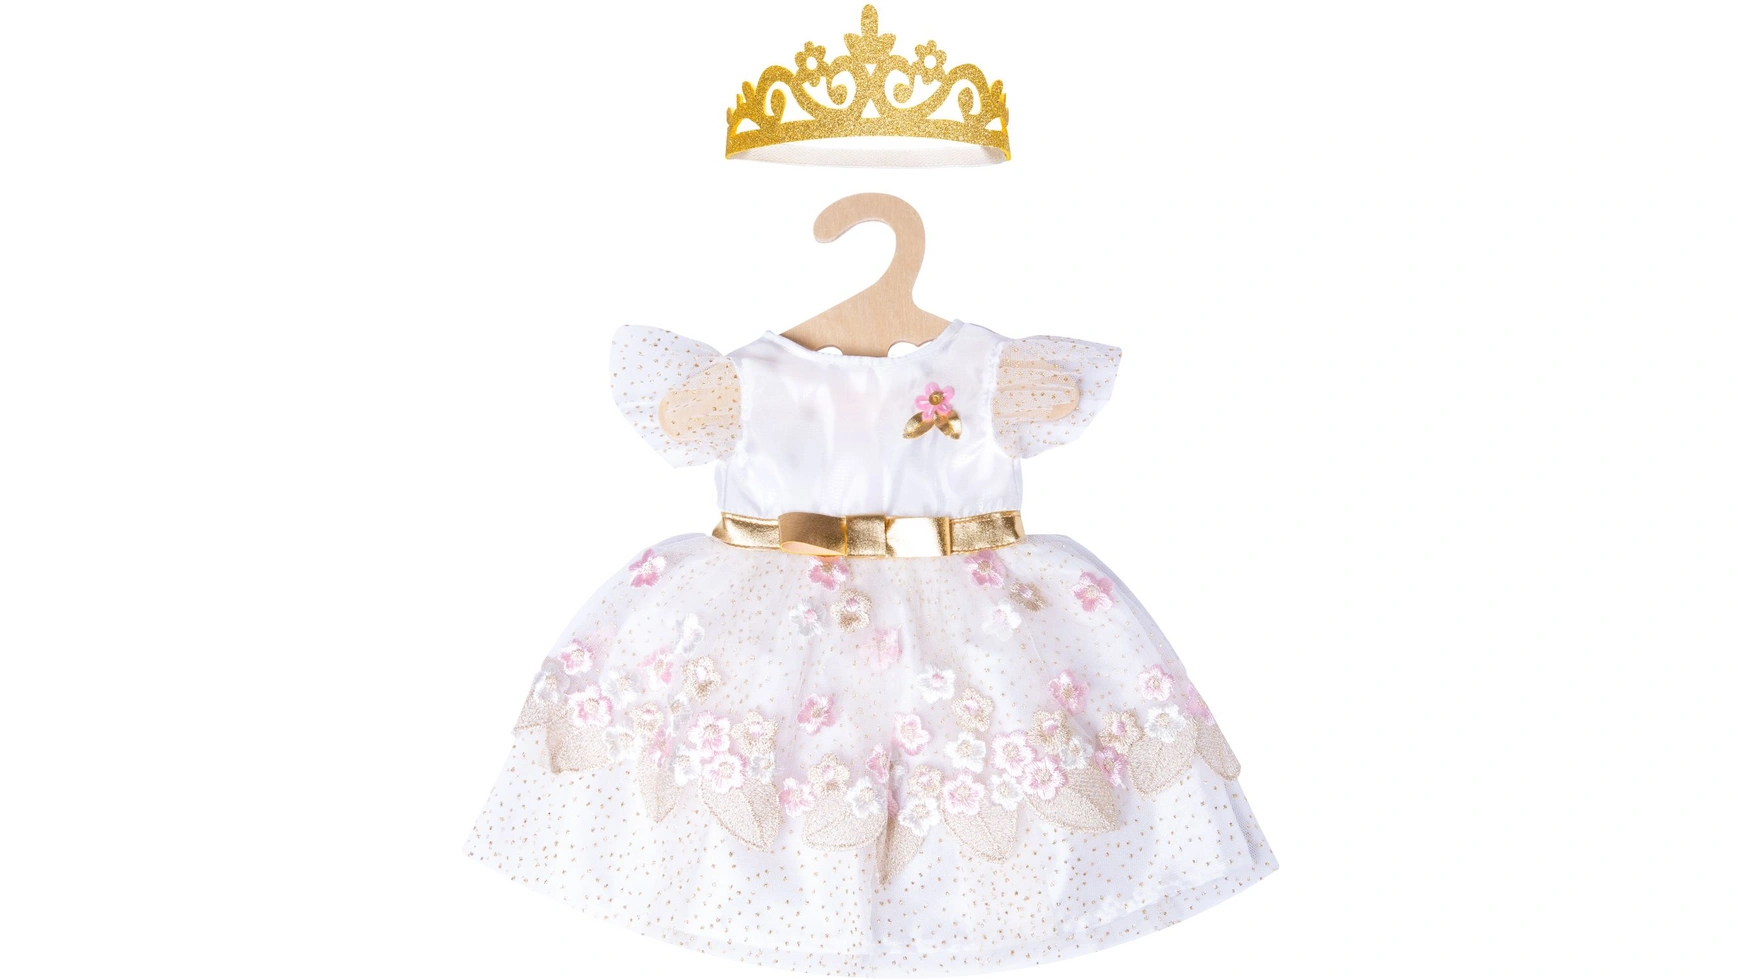 Кукла принцесса в платье вишневого цвета с золотой короной, размер 28-35см Heless кукольный домик дворец красавицы феи сказочный фэнтази le toy van